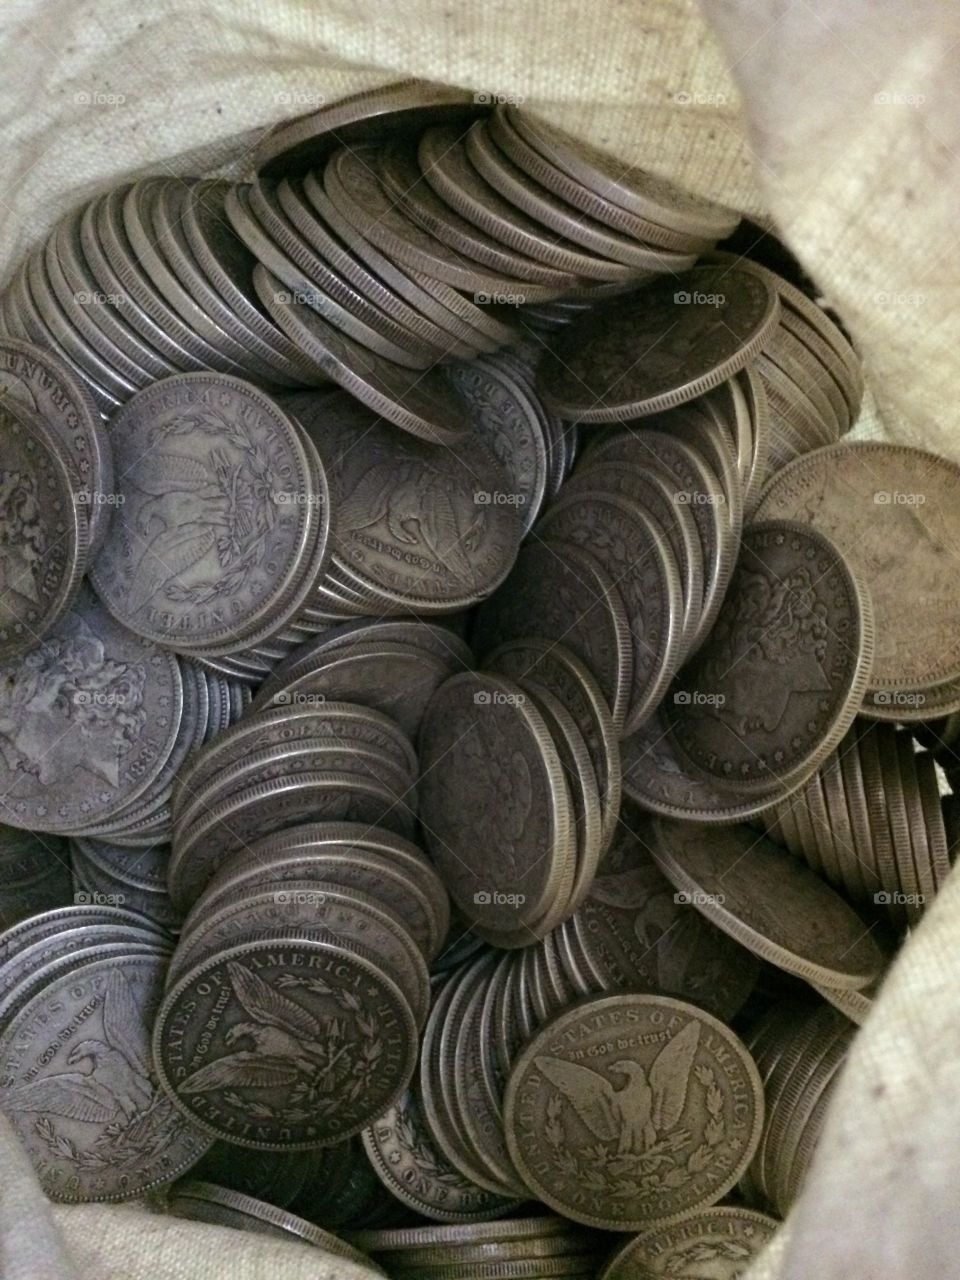 Morgan Dollars. A sack full of circulated Morgan silver dollars from various Mints. 